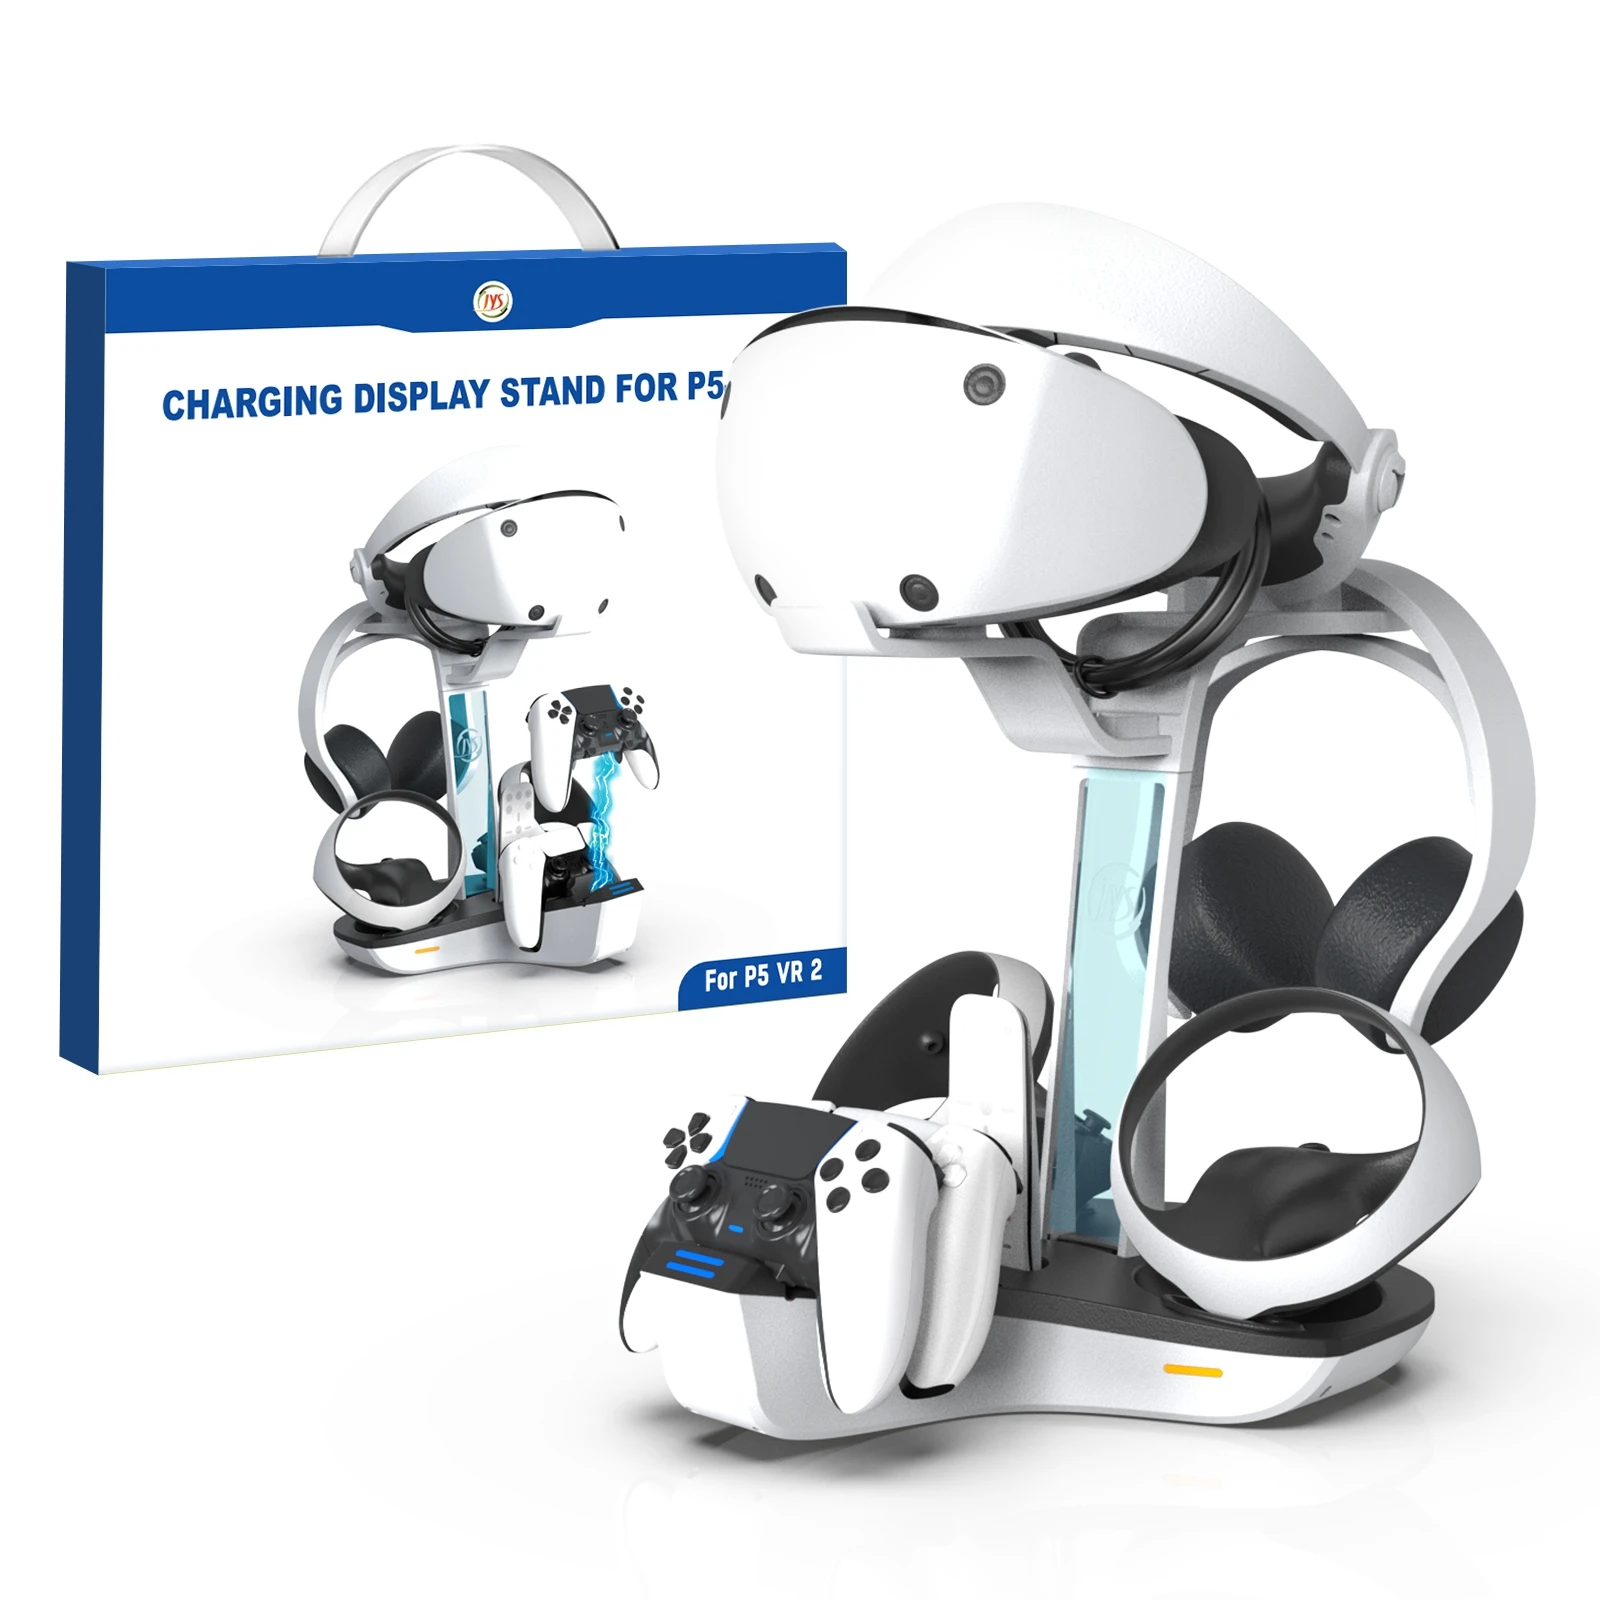 PS VR2 / P5 Gamepad şarj standı İçin PS5 Elite Kolu şarj standı Şarj cihazı Saklanabilir Kask Kulaklık Kullanımı Kolay Dayanıklı - 5